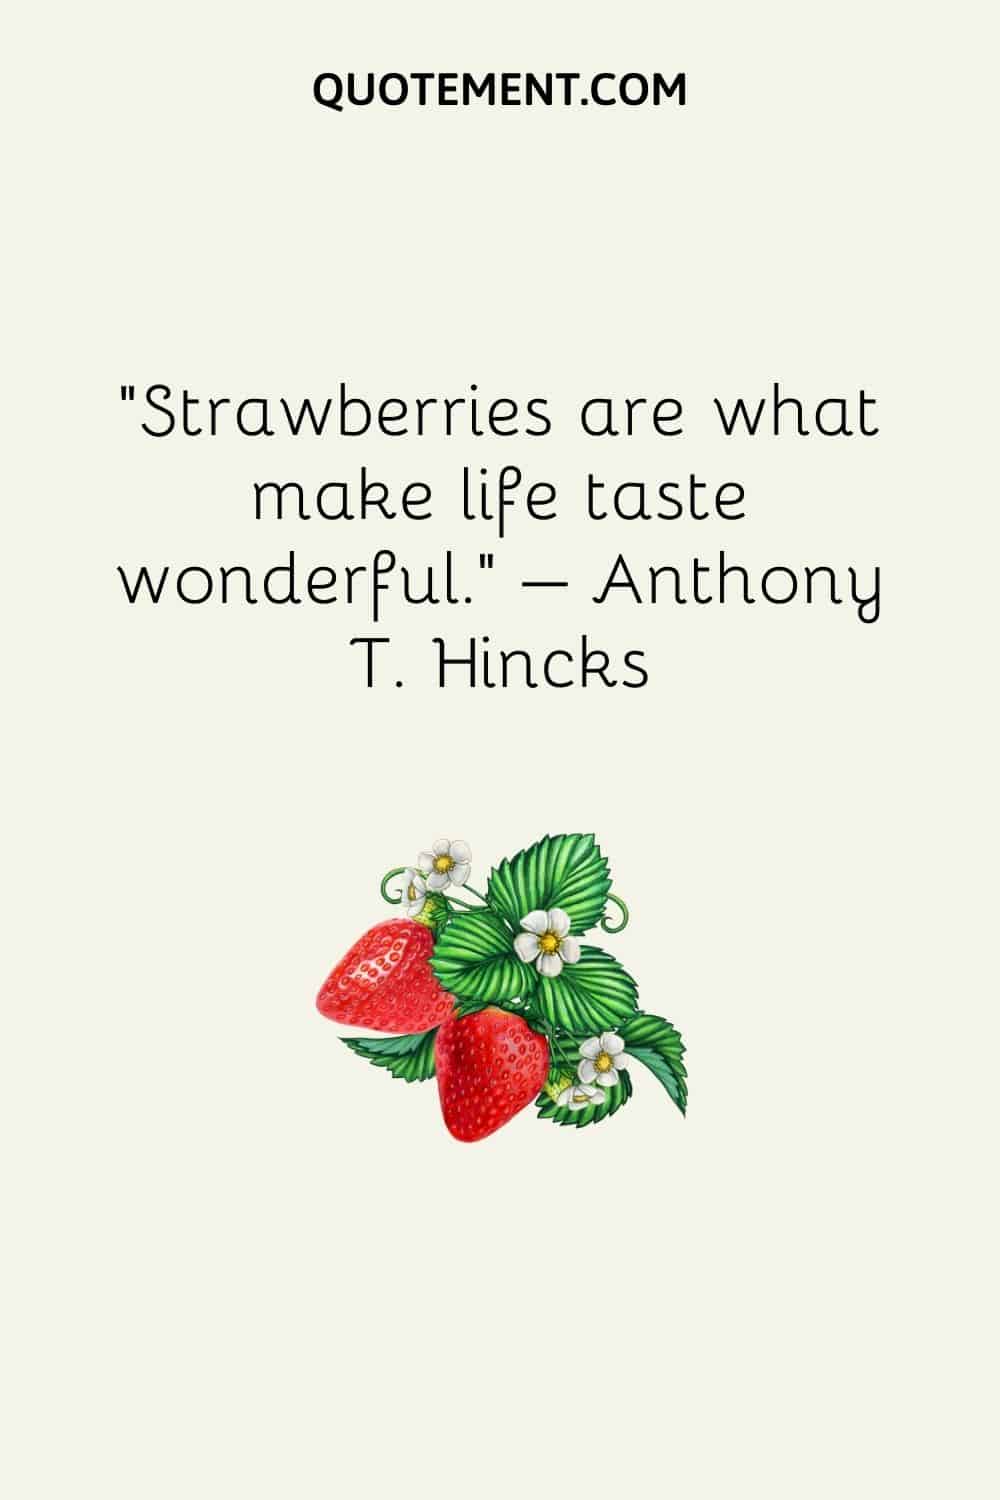 Las fresas hacen que la vida tenga un sabor maravilloso.